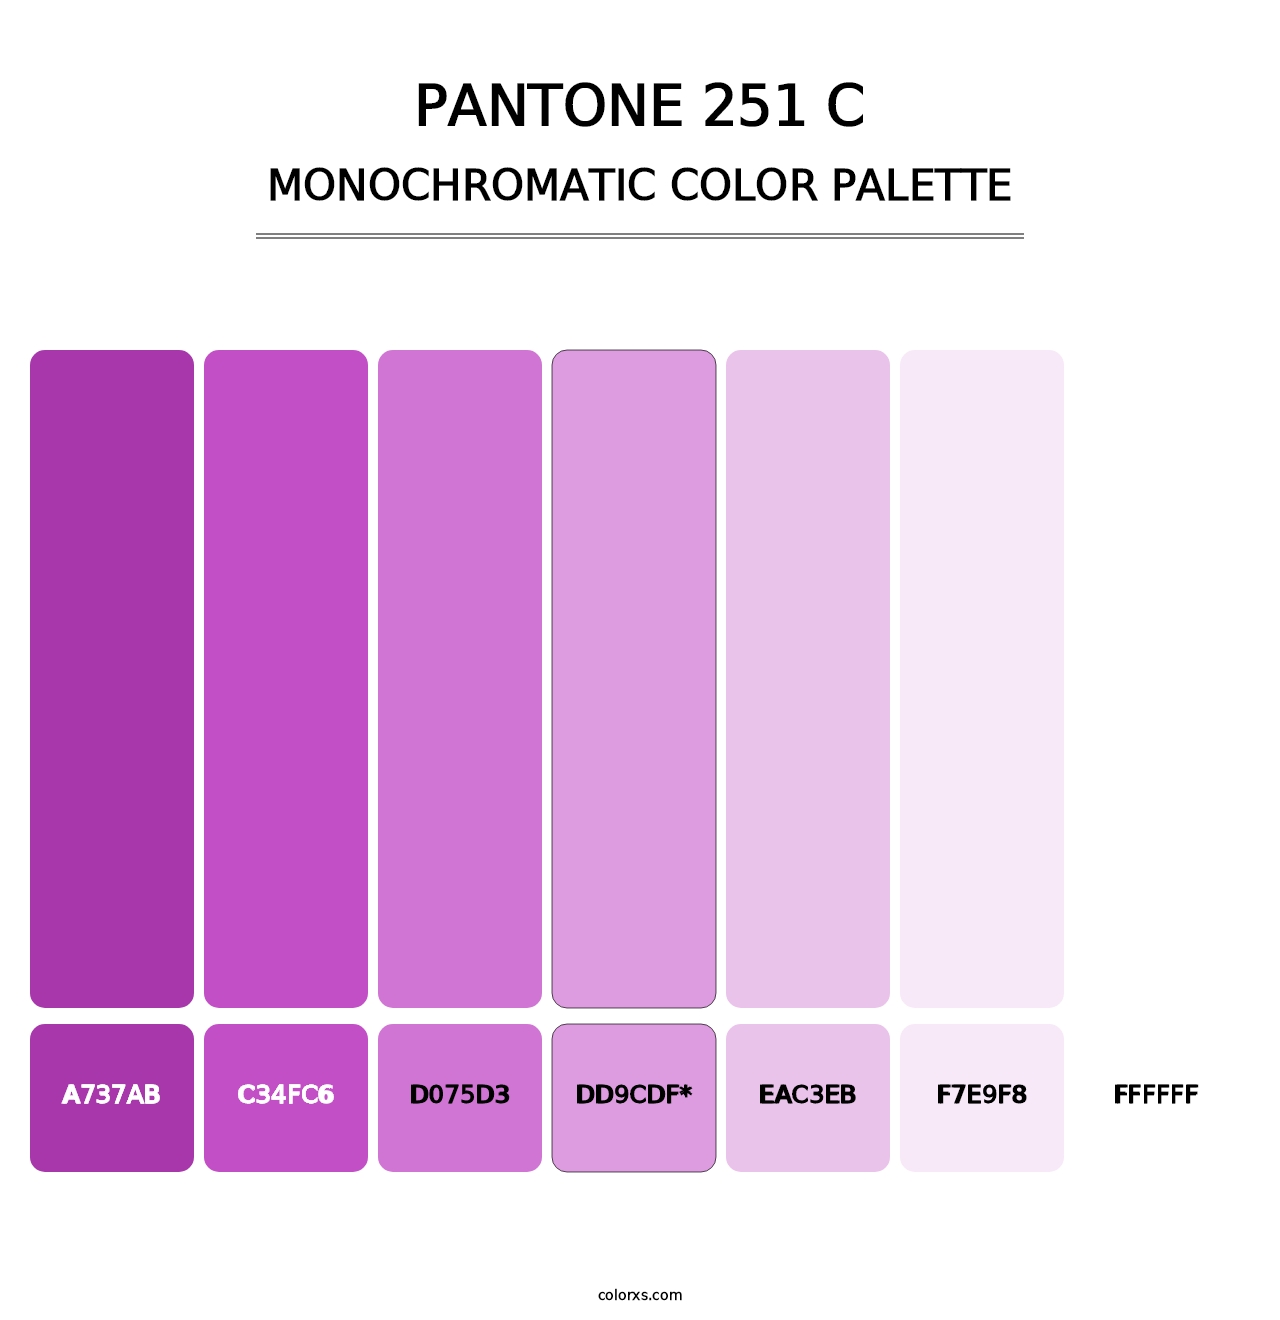 PANTONE 251 C - Monochromatic Color Palette